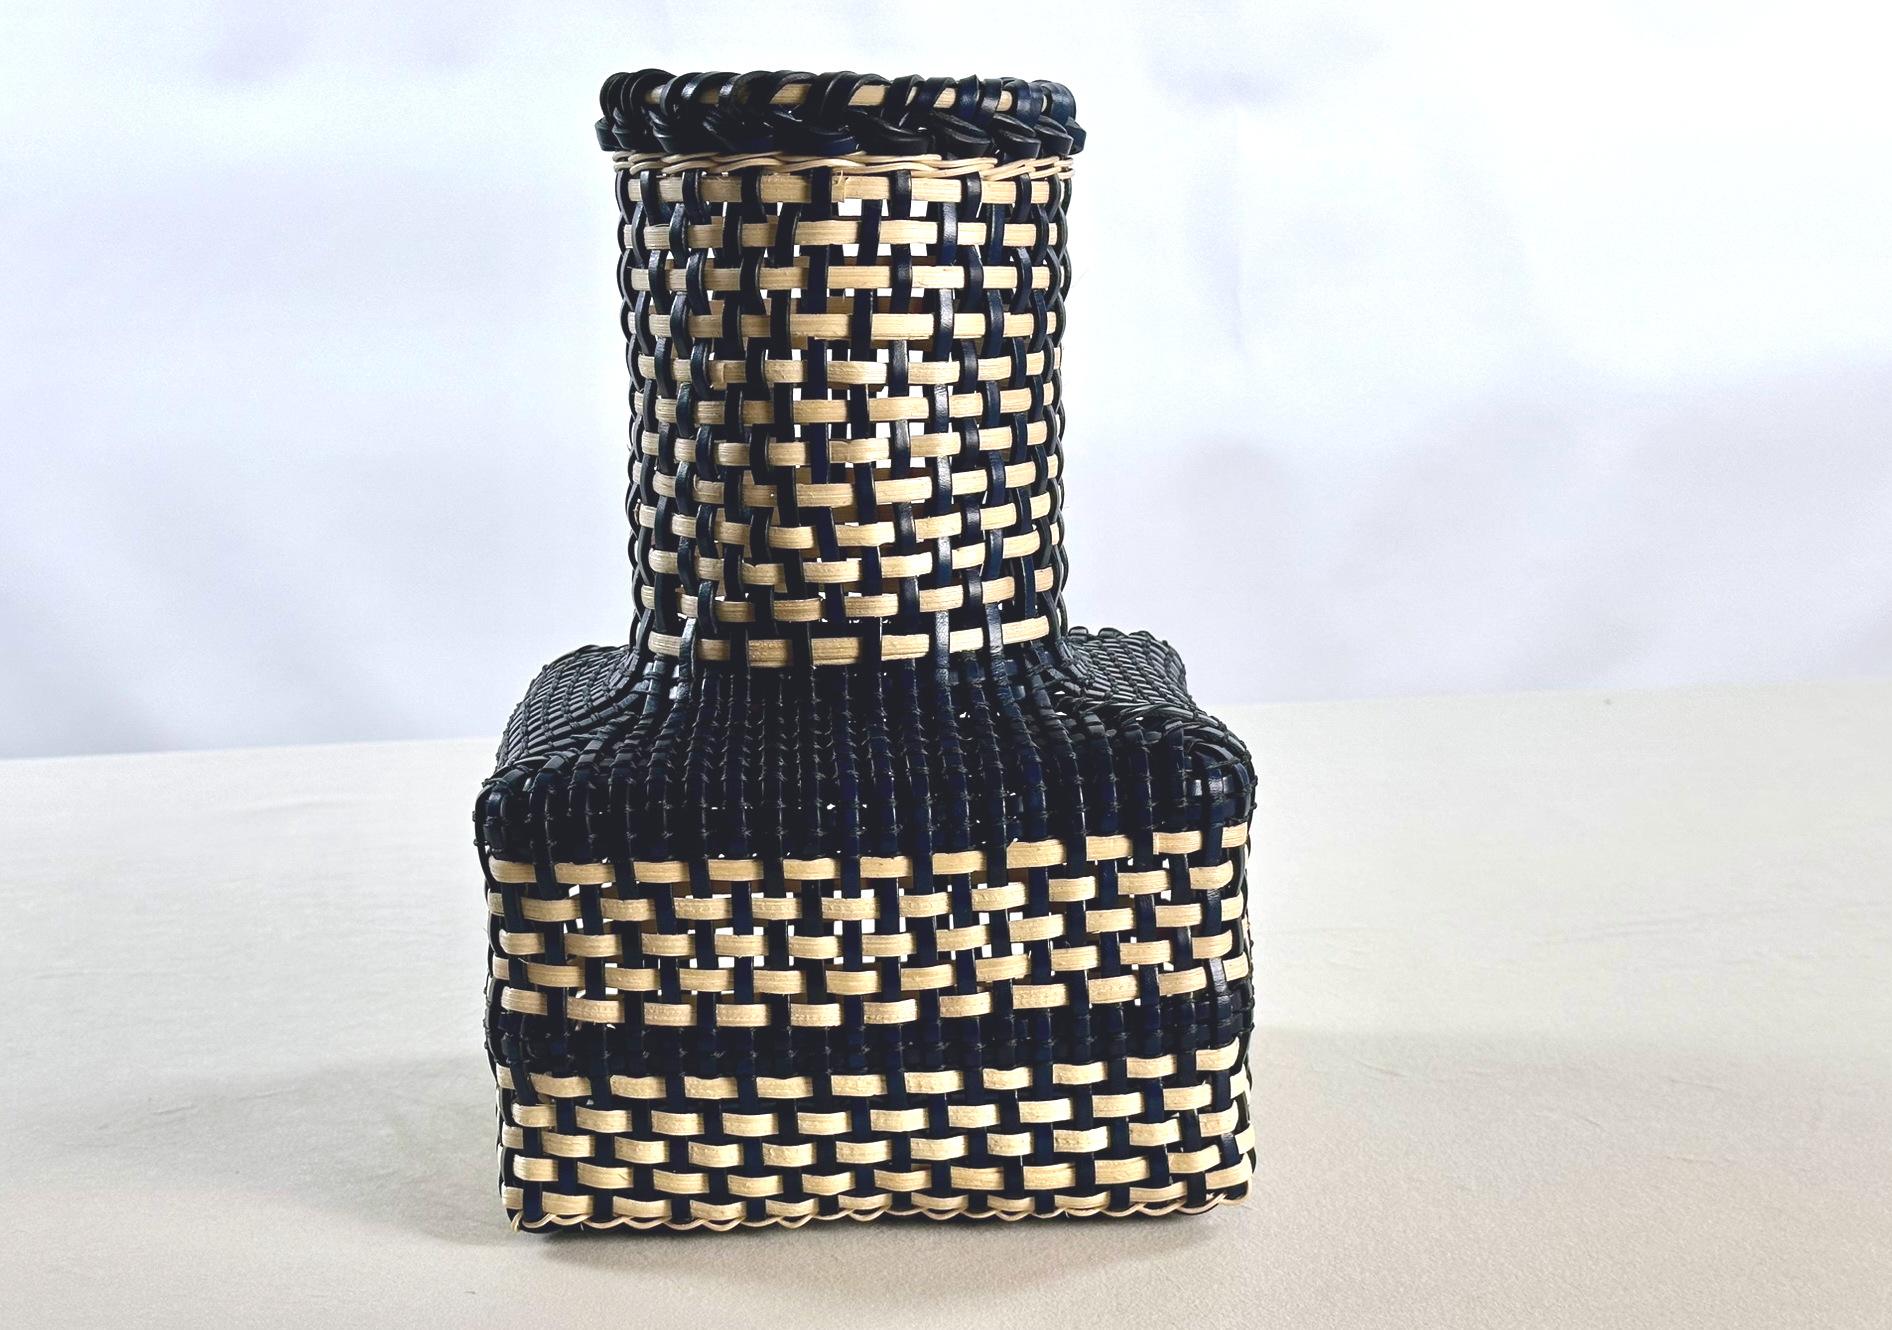 JoverValls setzt seine Arbeit zur Herstellung von Gegenständen fort, die die Traditionen der lokalen Handwerkskunst wieder aufleben lassen.

JoverValls freut sich, seine neue Korbwaren-Kollektion vorzustellen, eine innovative Fusion von Materialien,